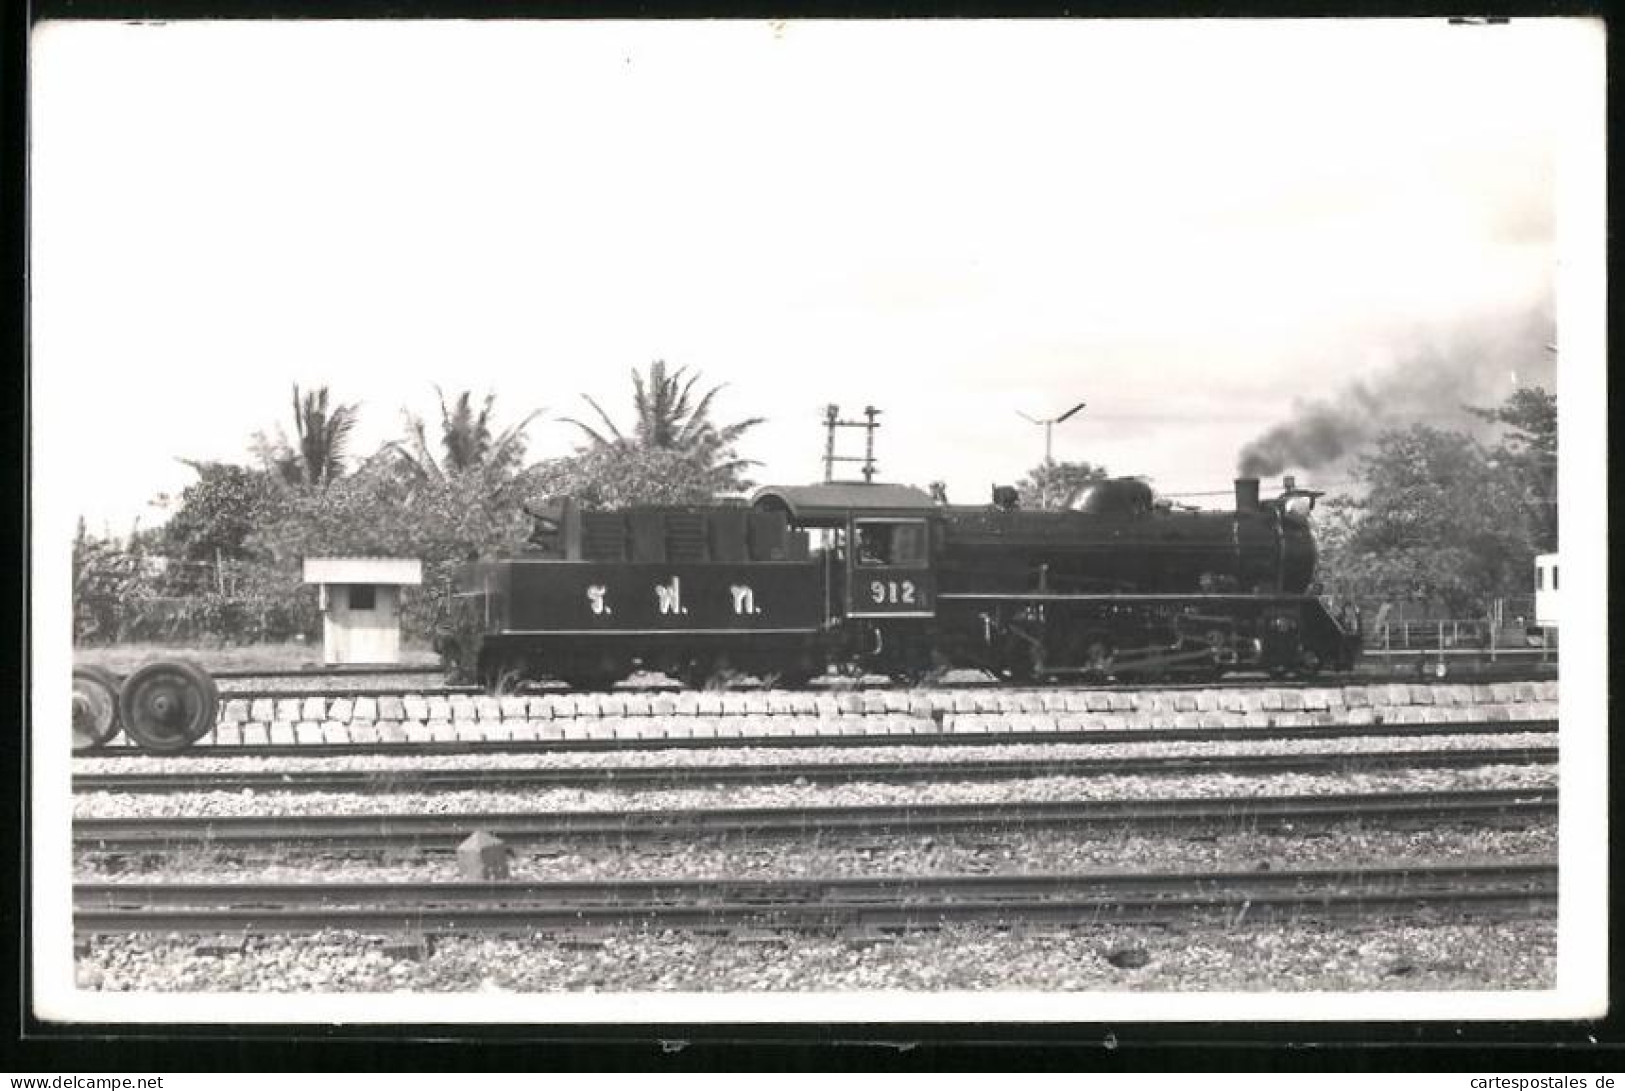 Fotografie Britische Eisenbahn, Dampflok, Tender-Lokomotive Nr. 912  - Eisenbahnen